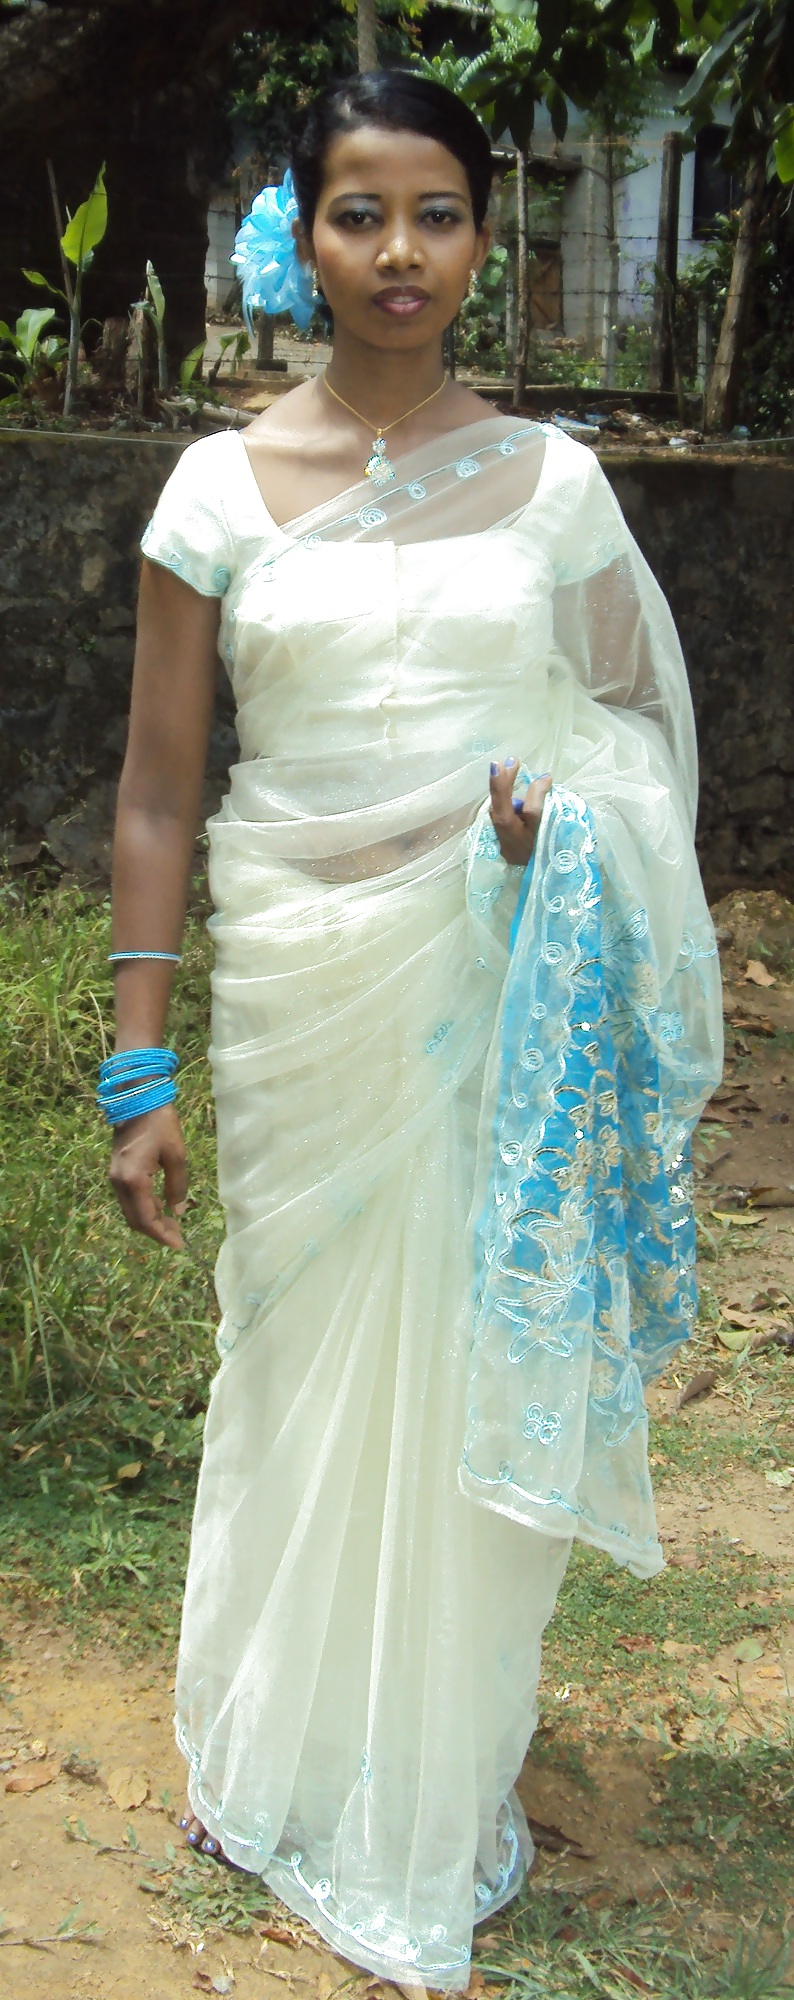 Esposa de Sri Lanka expuesta
 #21620191